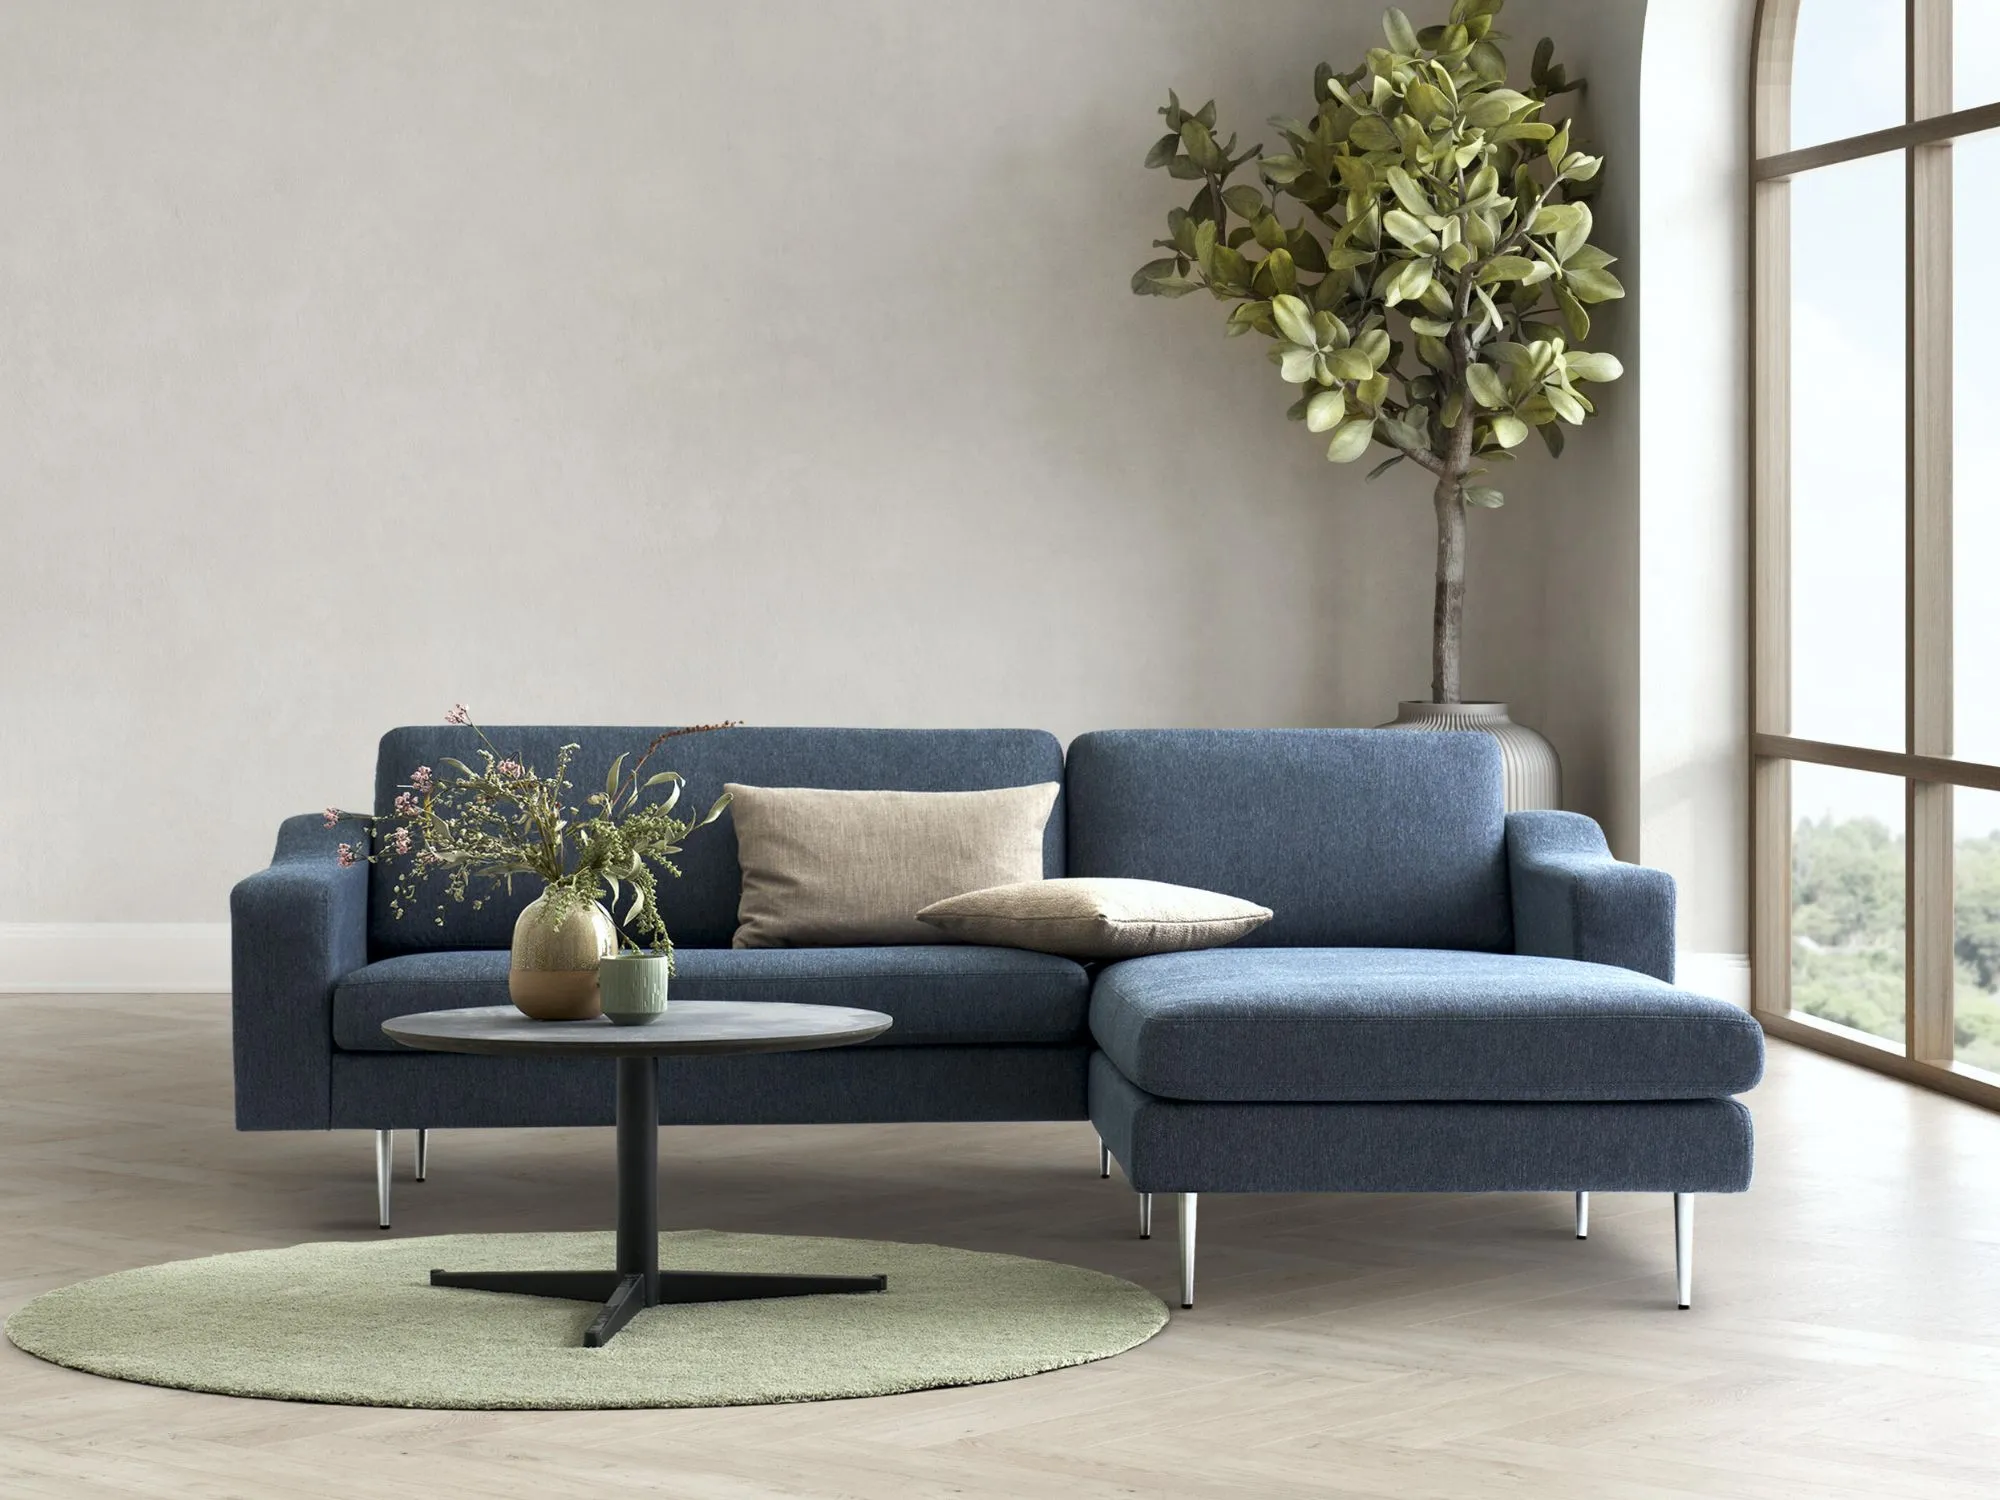 Summen Ripples mistet hjerte Sofaer | Komfortable og smukke sofaer i høj kvalitet